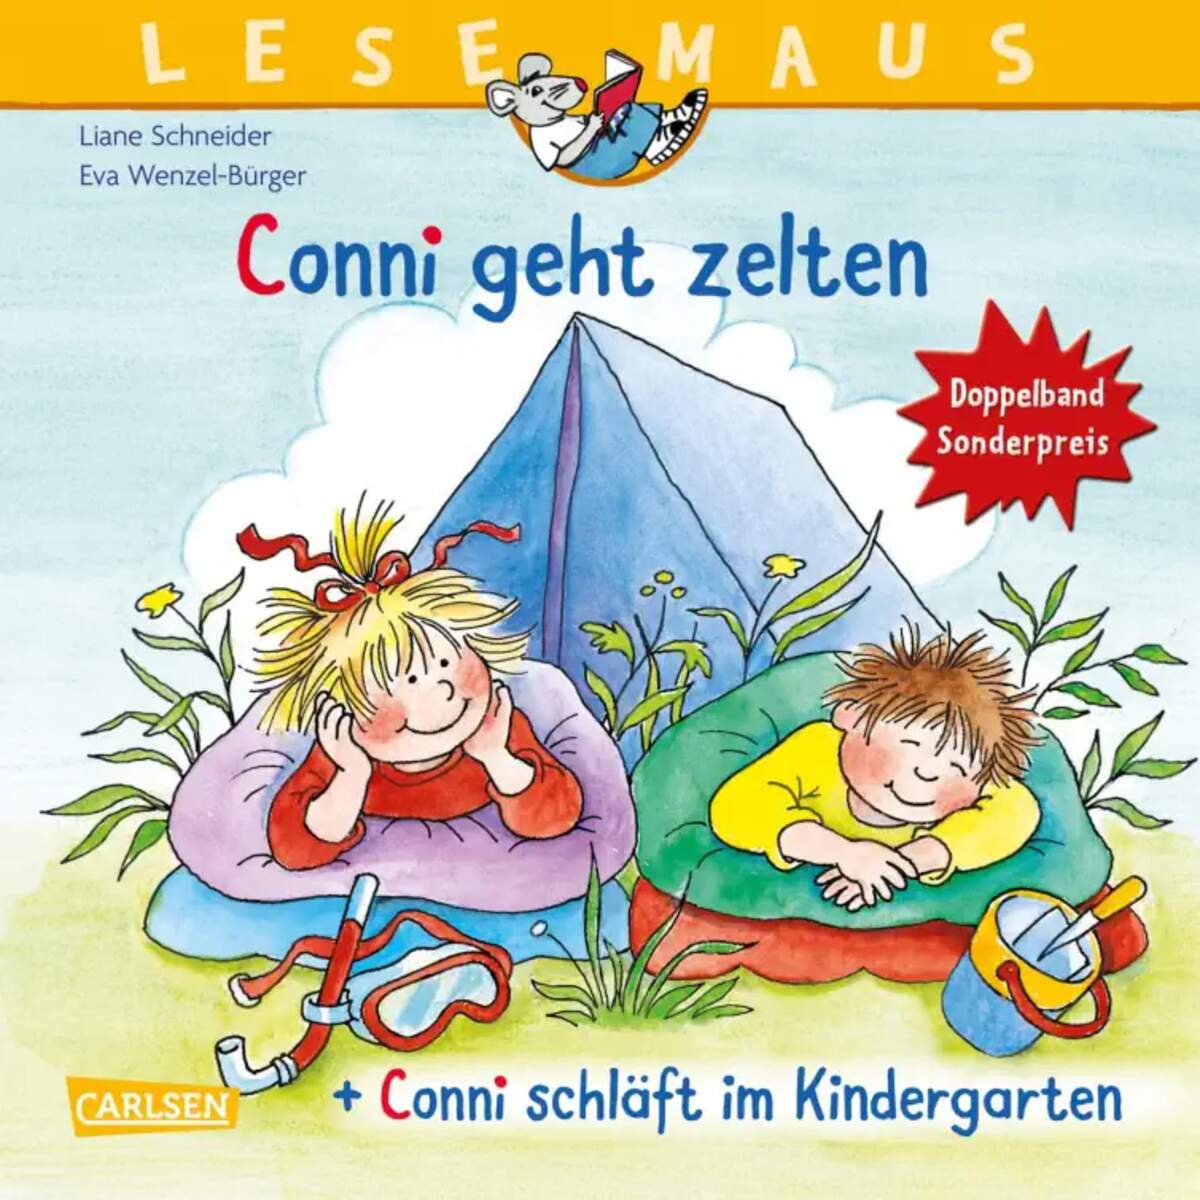 Carlsen Verlag LESEMAUS 205: "Conni geht zelten" + "Conni schläft im Kindergarten" Doppelband